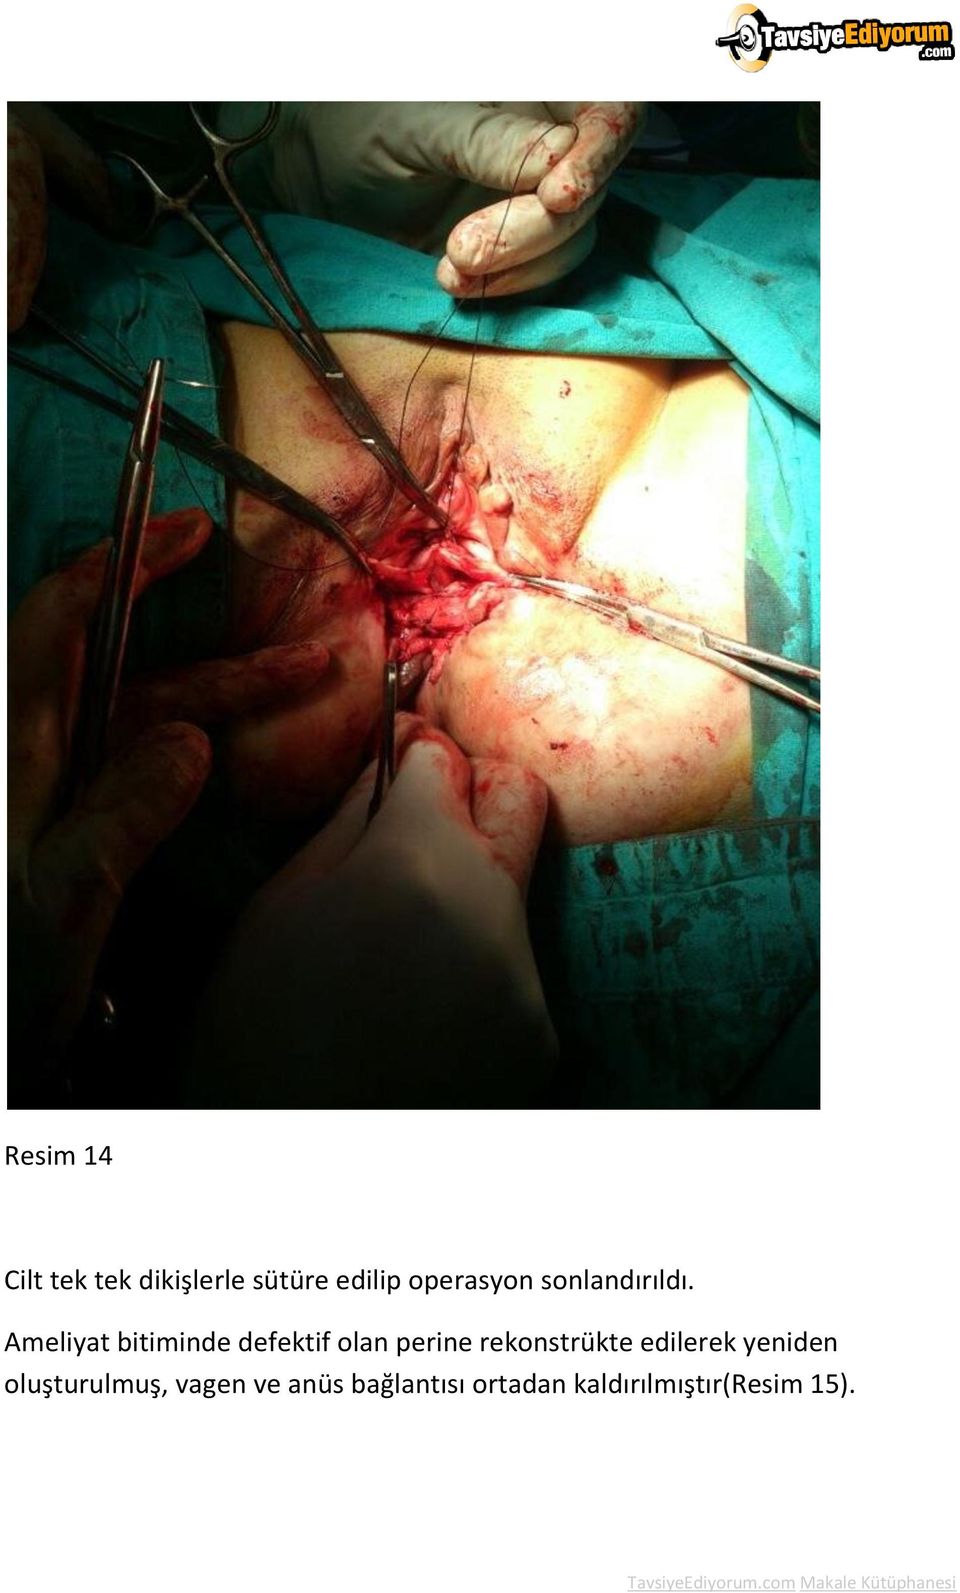 Ameliyat bitiminde defektif olan perine rekonstrükte